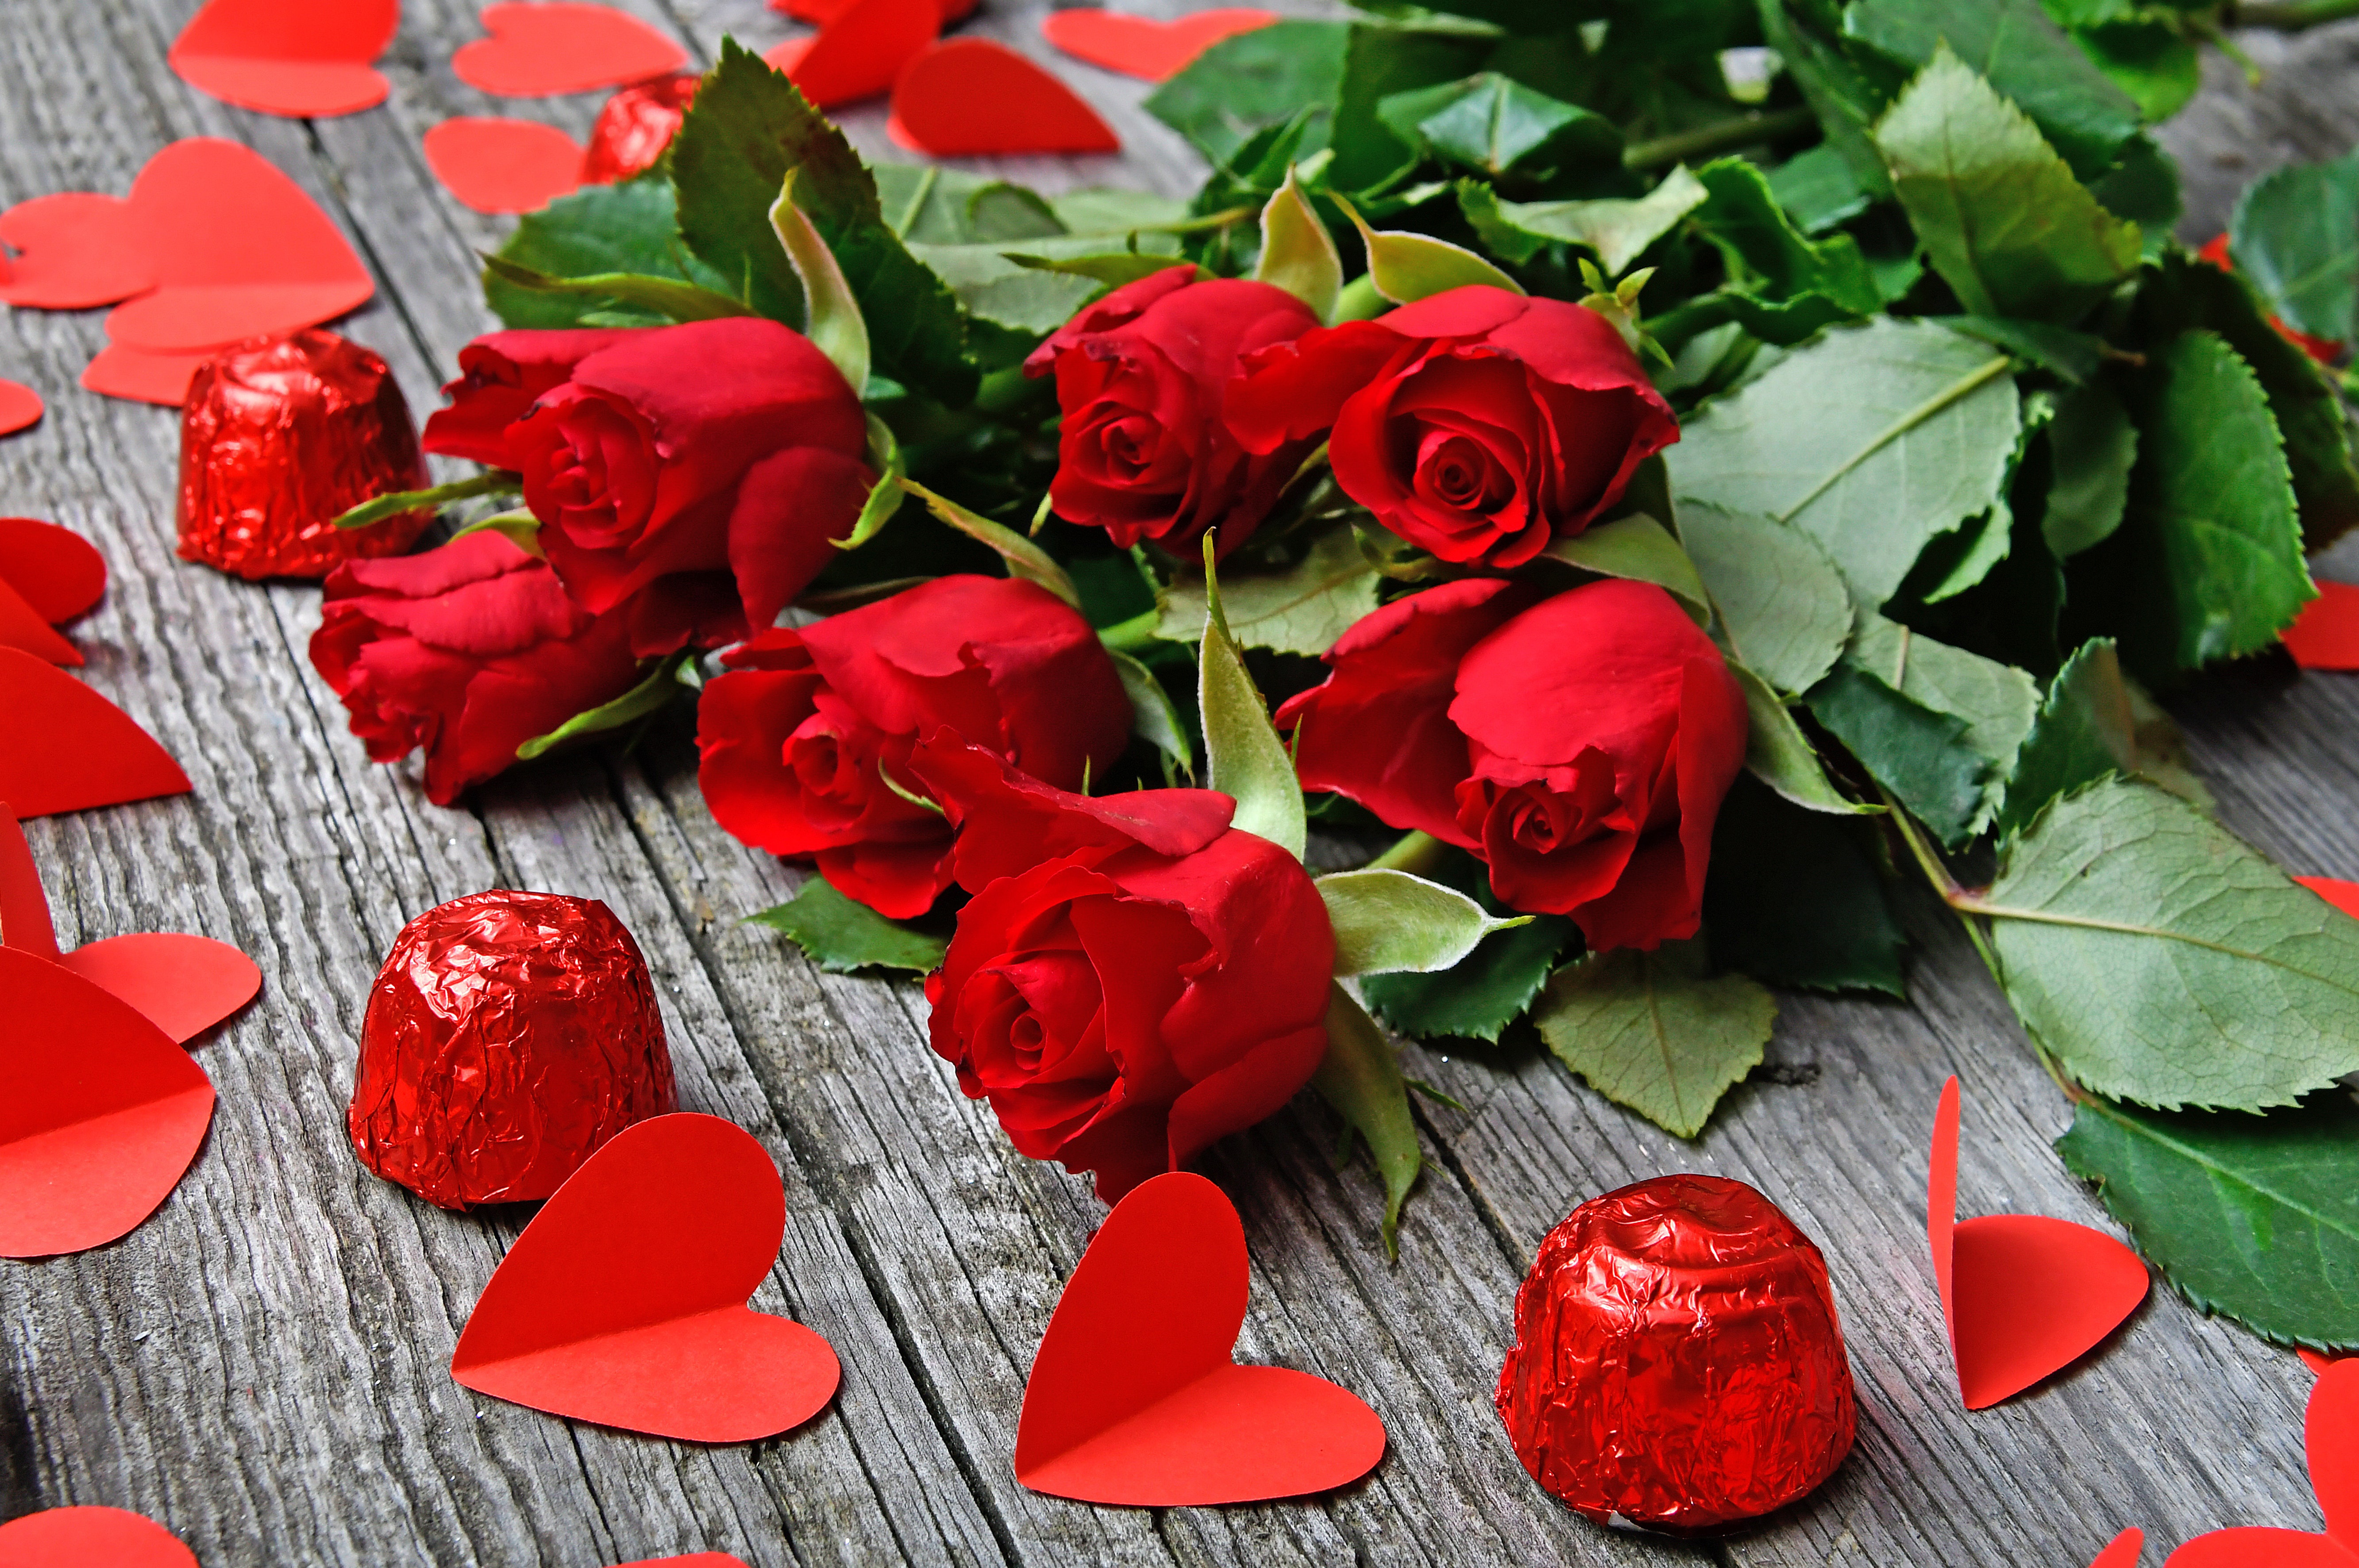 Скачать обои бесплатно Натюрморт, Роза, Сердце, День Святого Валентина, Праздничные, Красный Цветок картинка на рабочий стол ПК